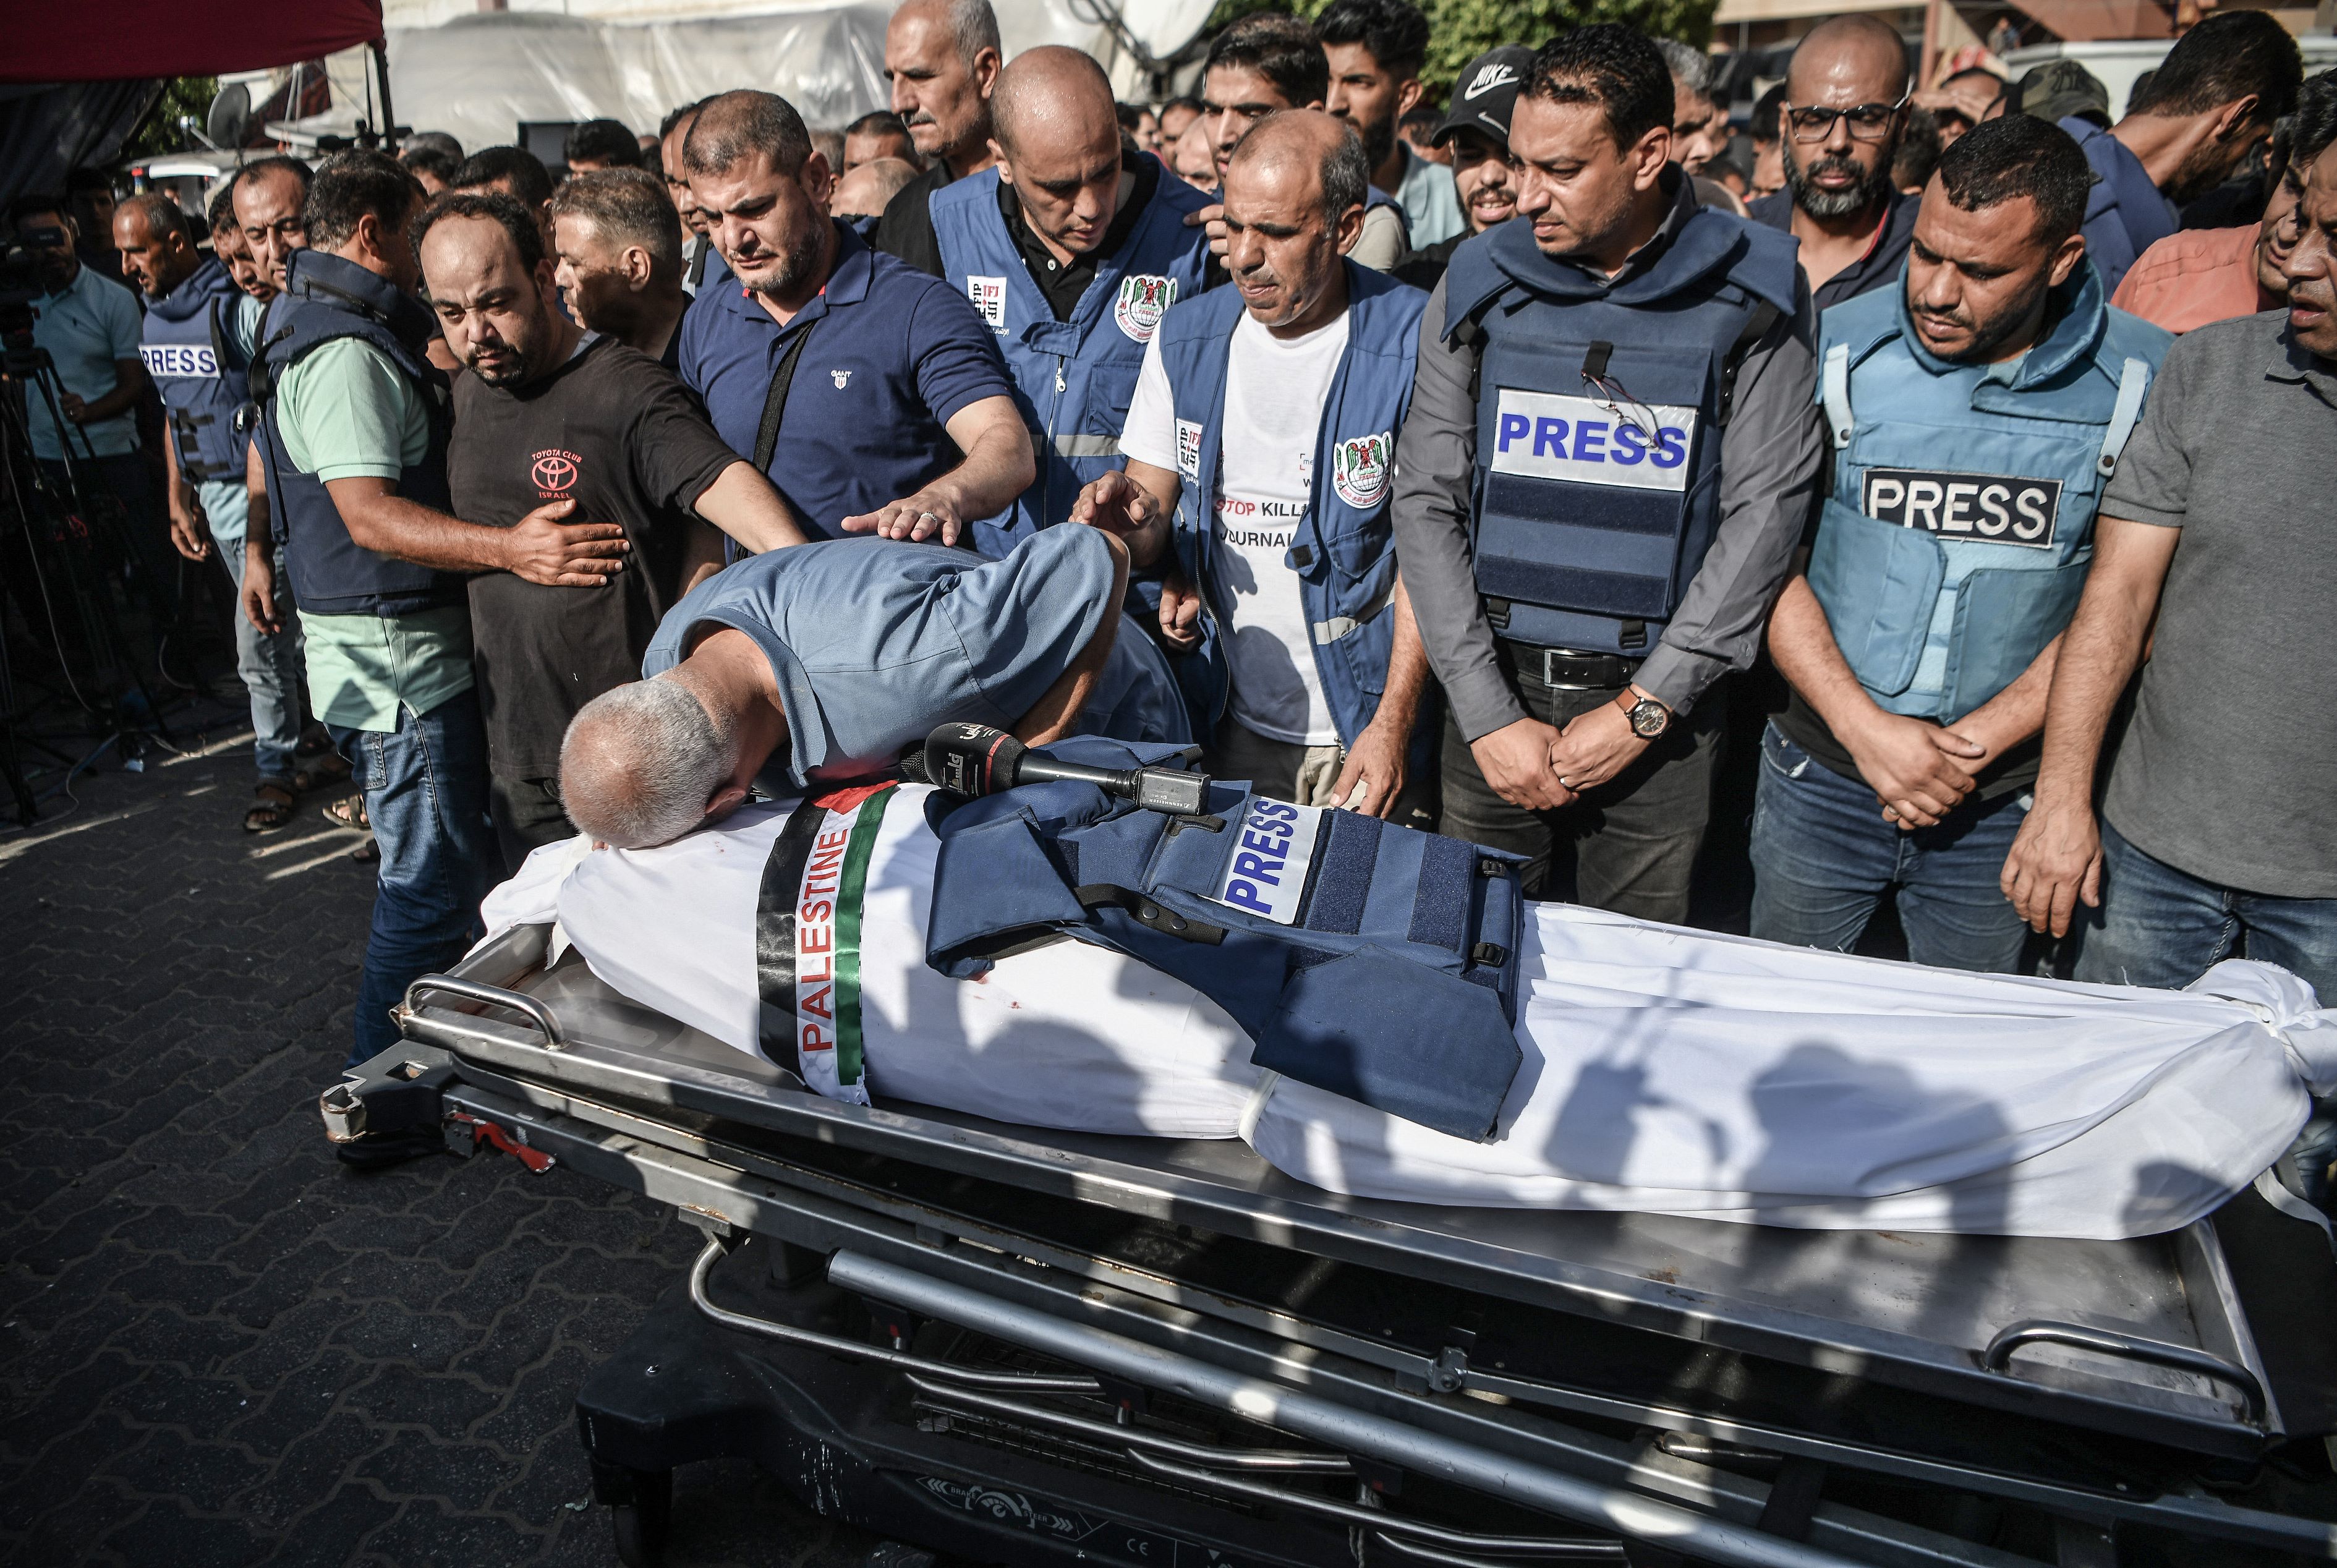 أكثر من 750 صحفيا يدينون قتل الصحفيين والتغطية الغربية المنحازة في الحرب  على غزة | معهد الجزيرة للإعلام